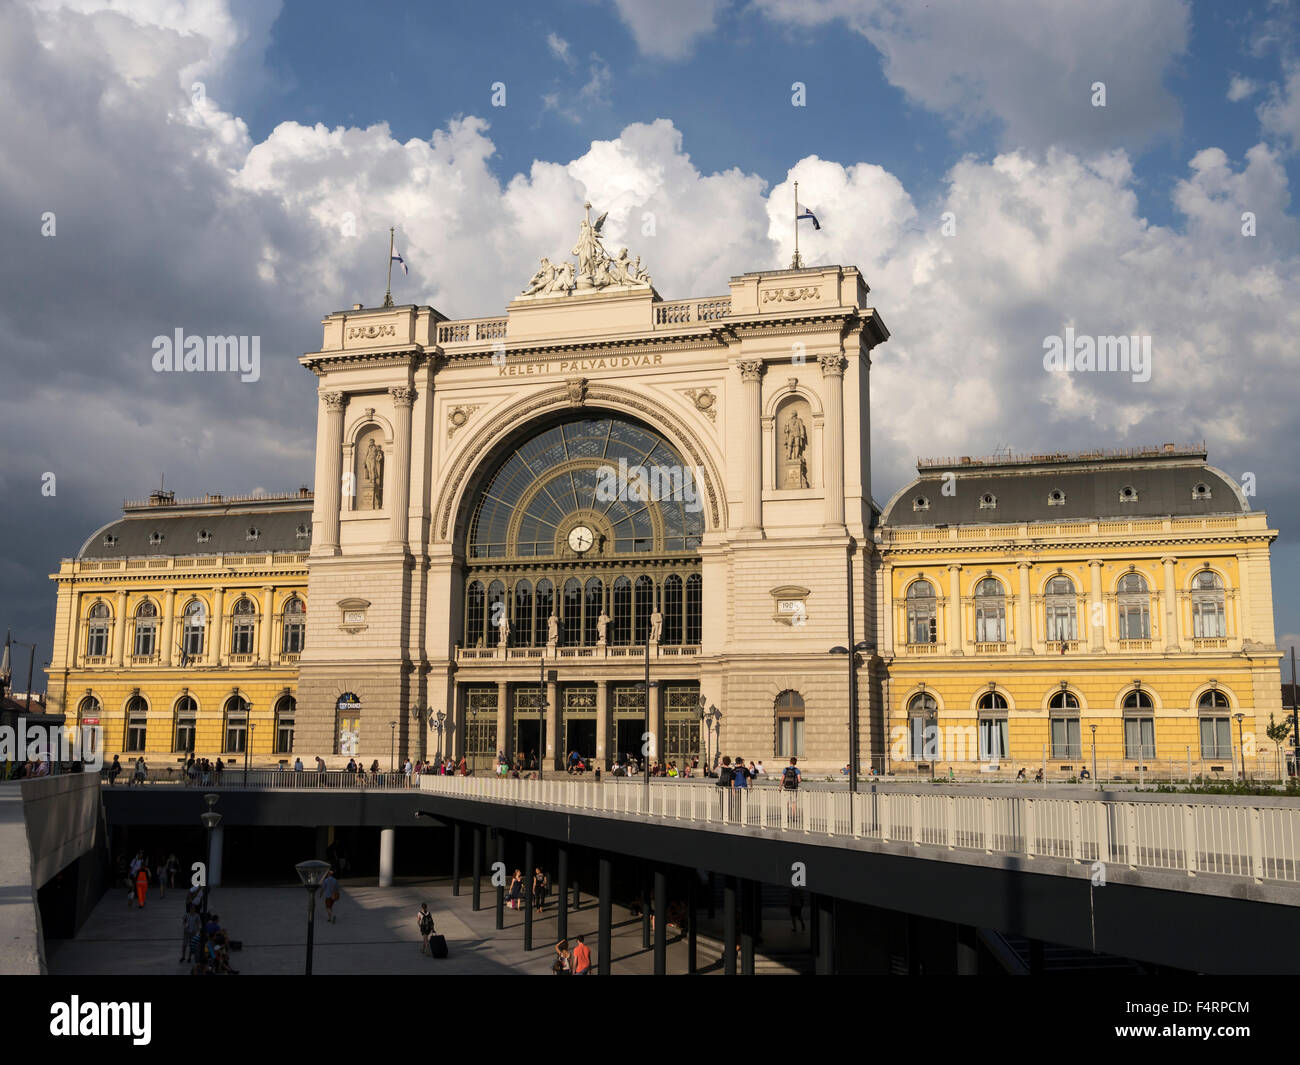 budapest keleti station Stock Photo